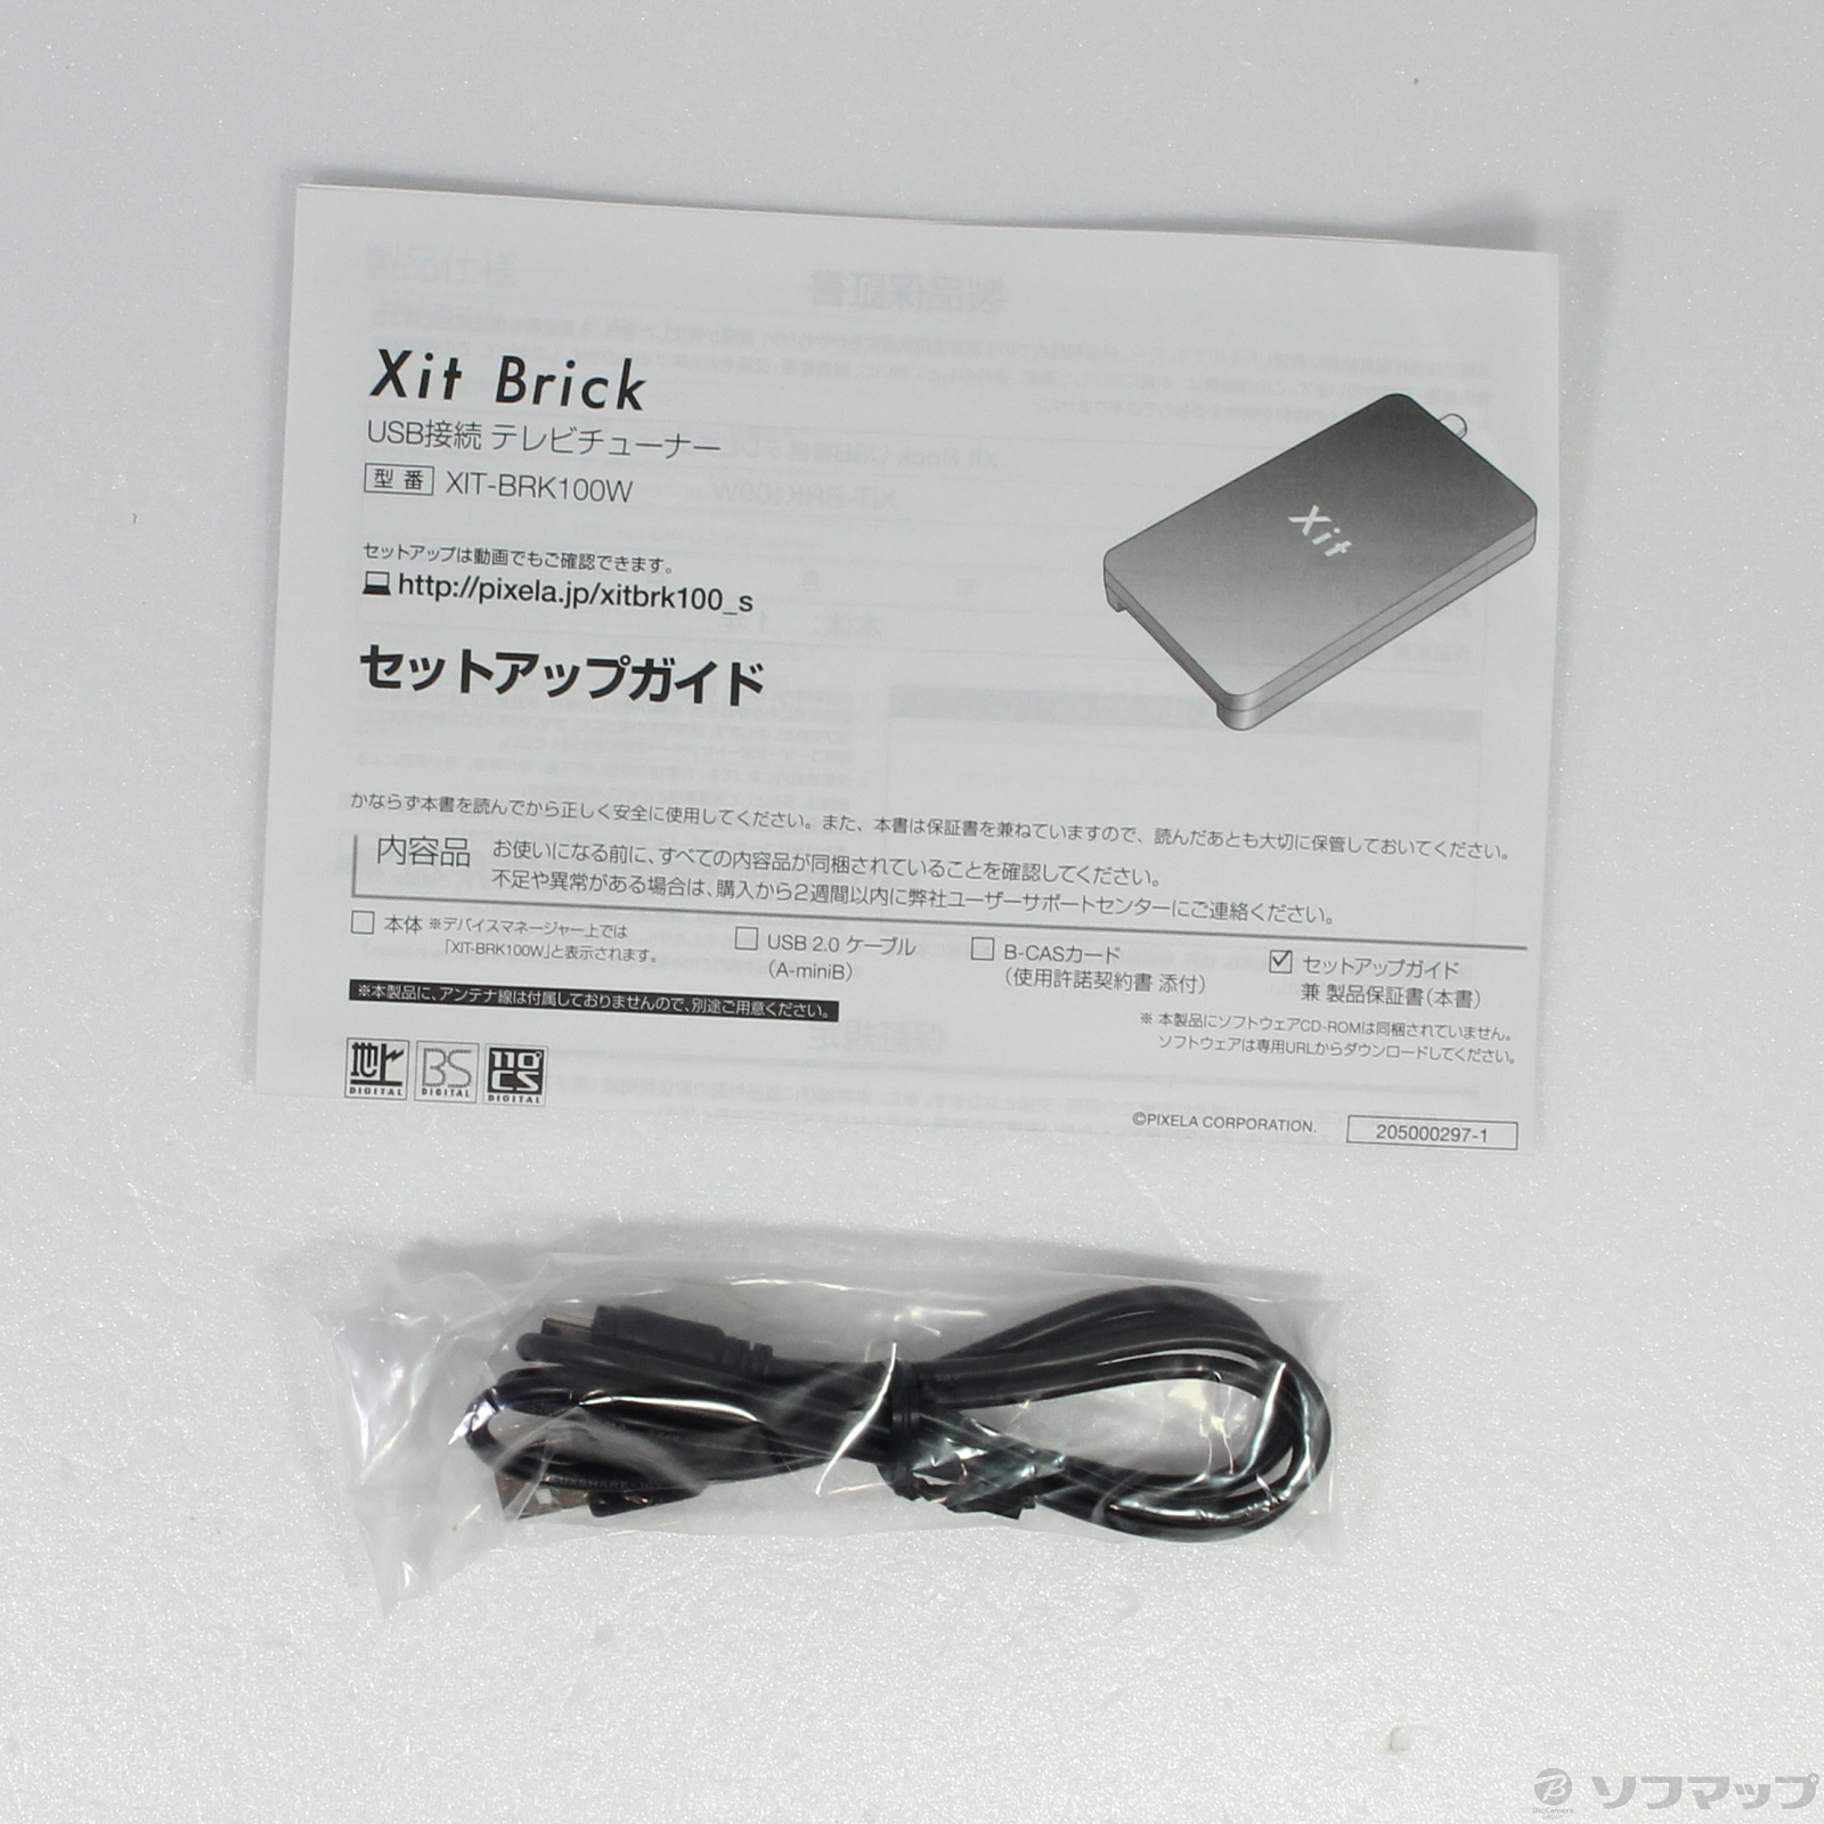 12月スーパーSALE ピクセラ Xit Brick USB接続 テレビチューナー